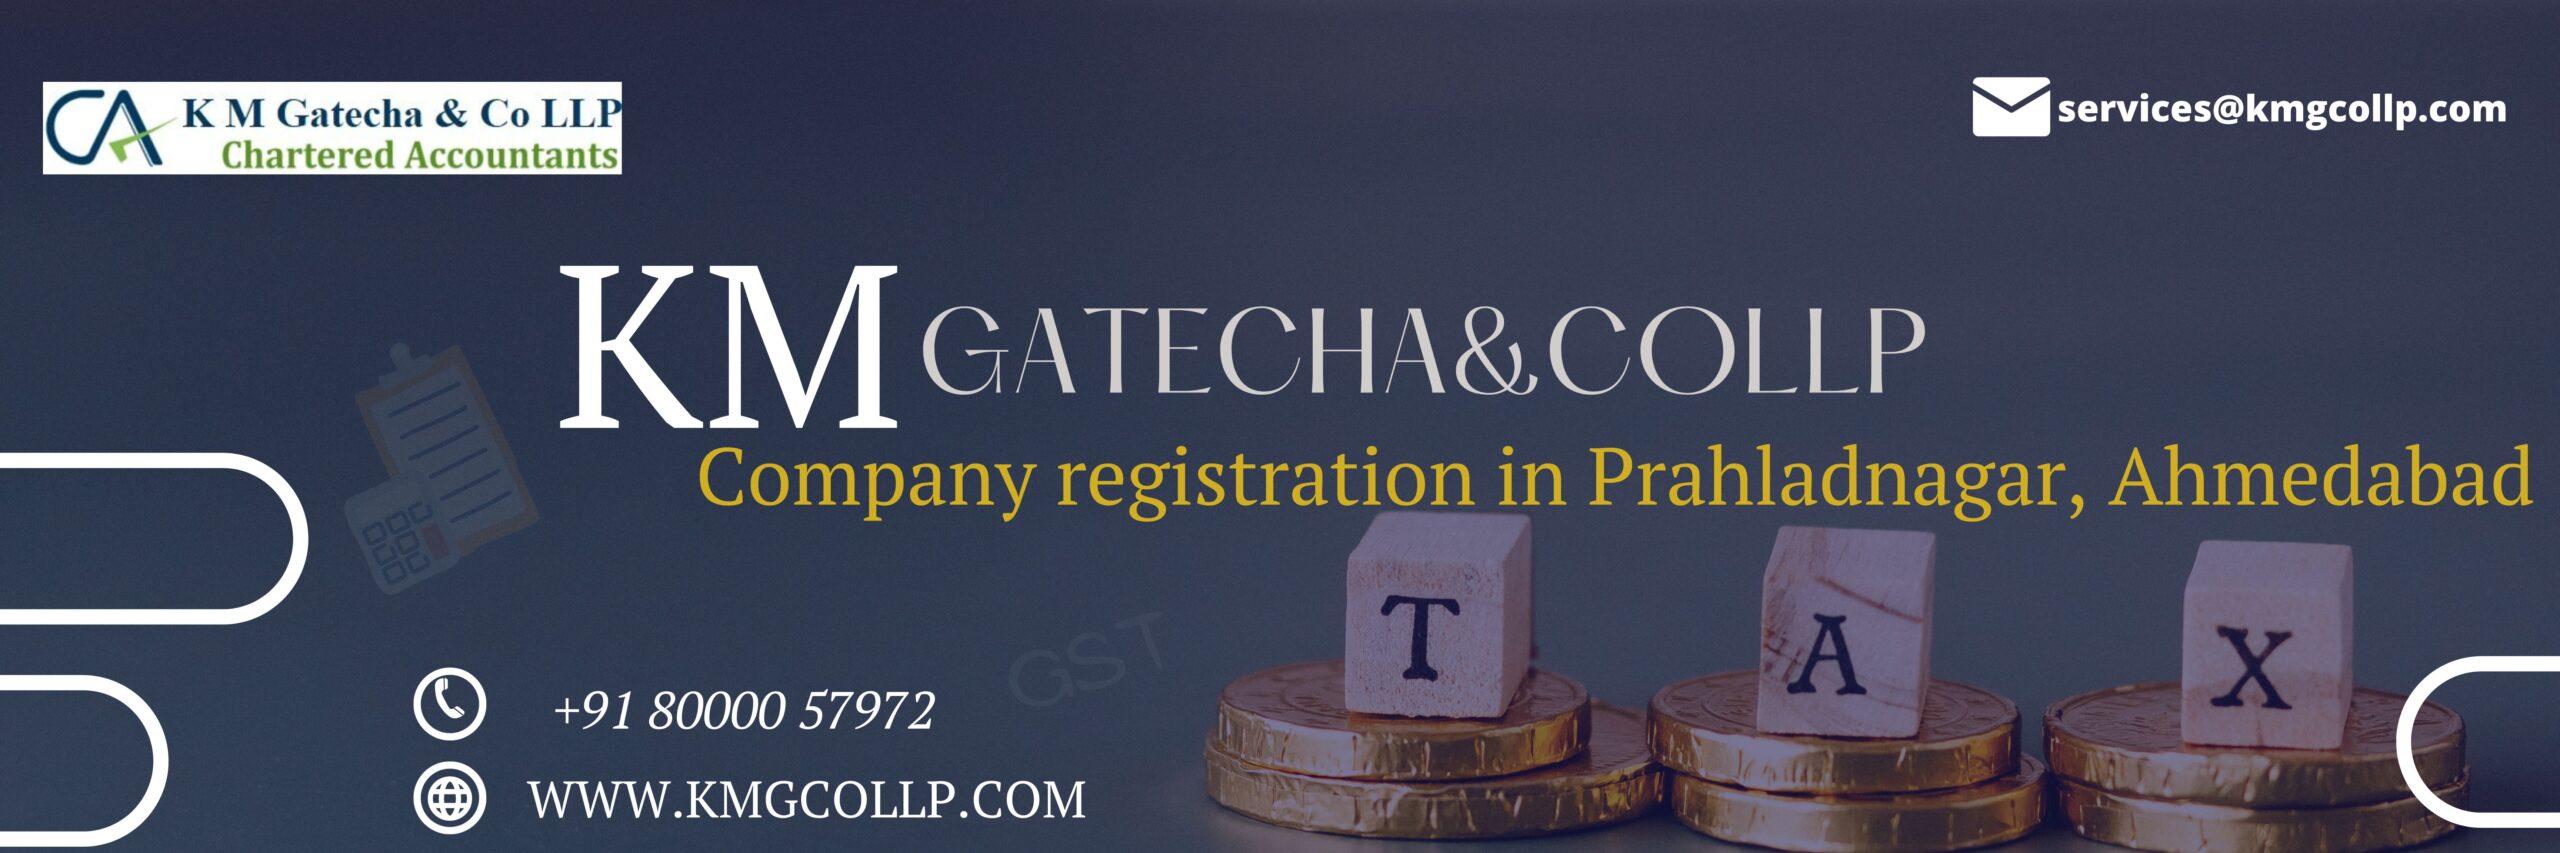 Company registration in Prahladnagar, Ahmedabad